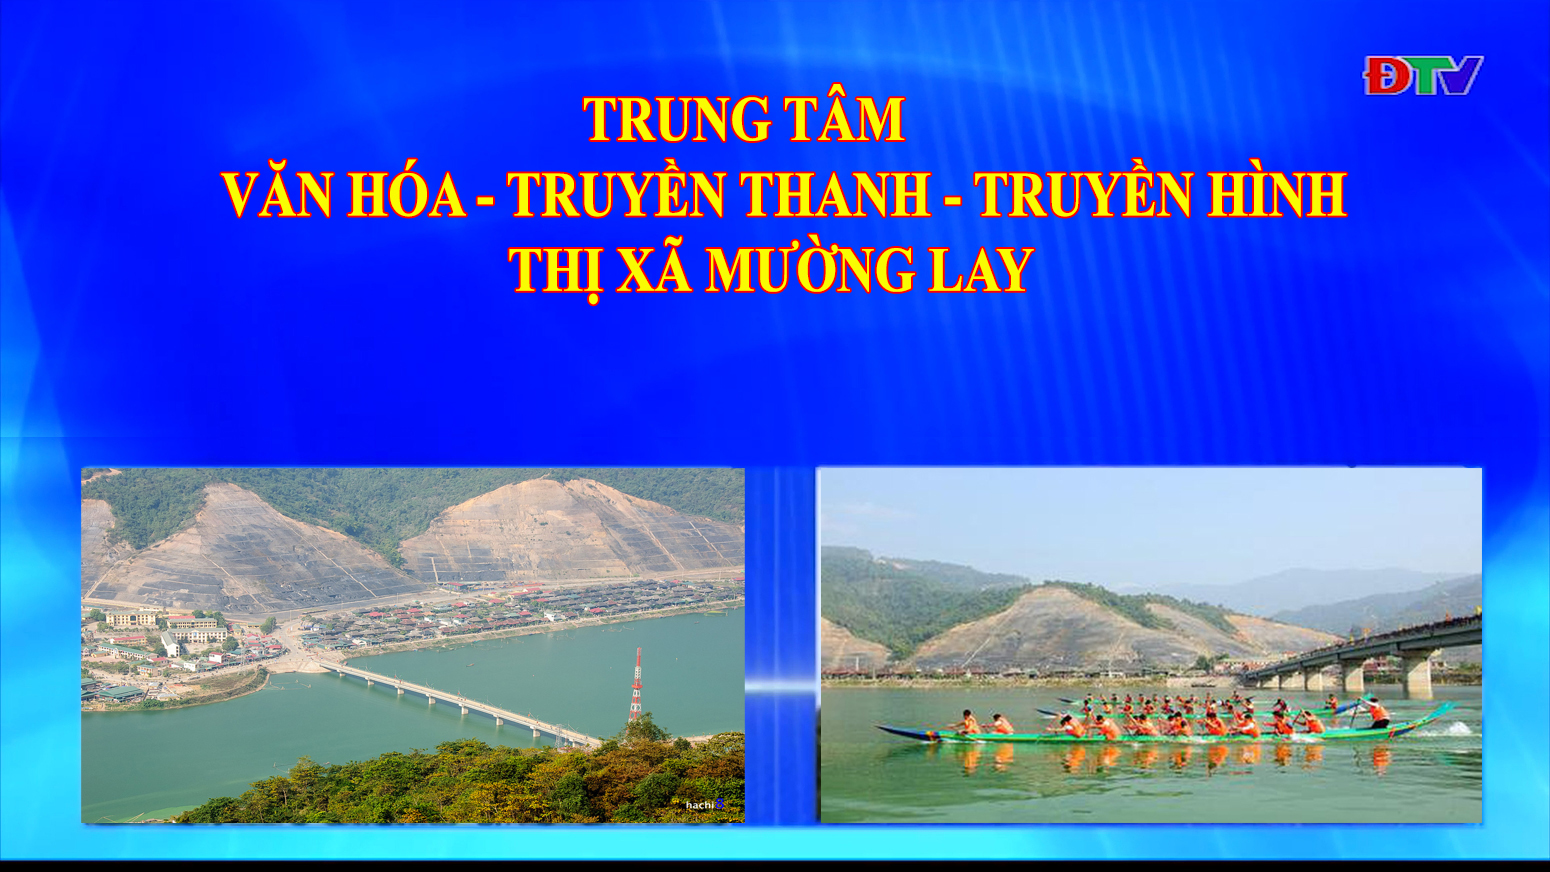 Trung tâm VH-TTTH thị xã Mường Lay (Ngày 5-3-2021)